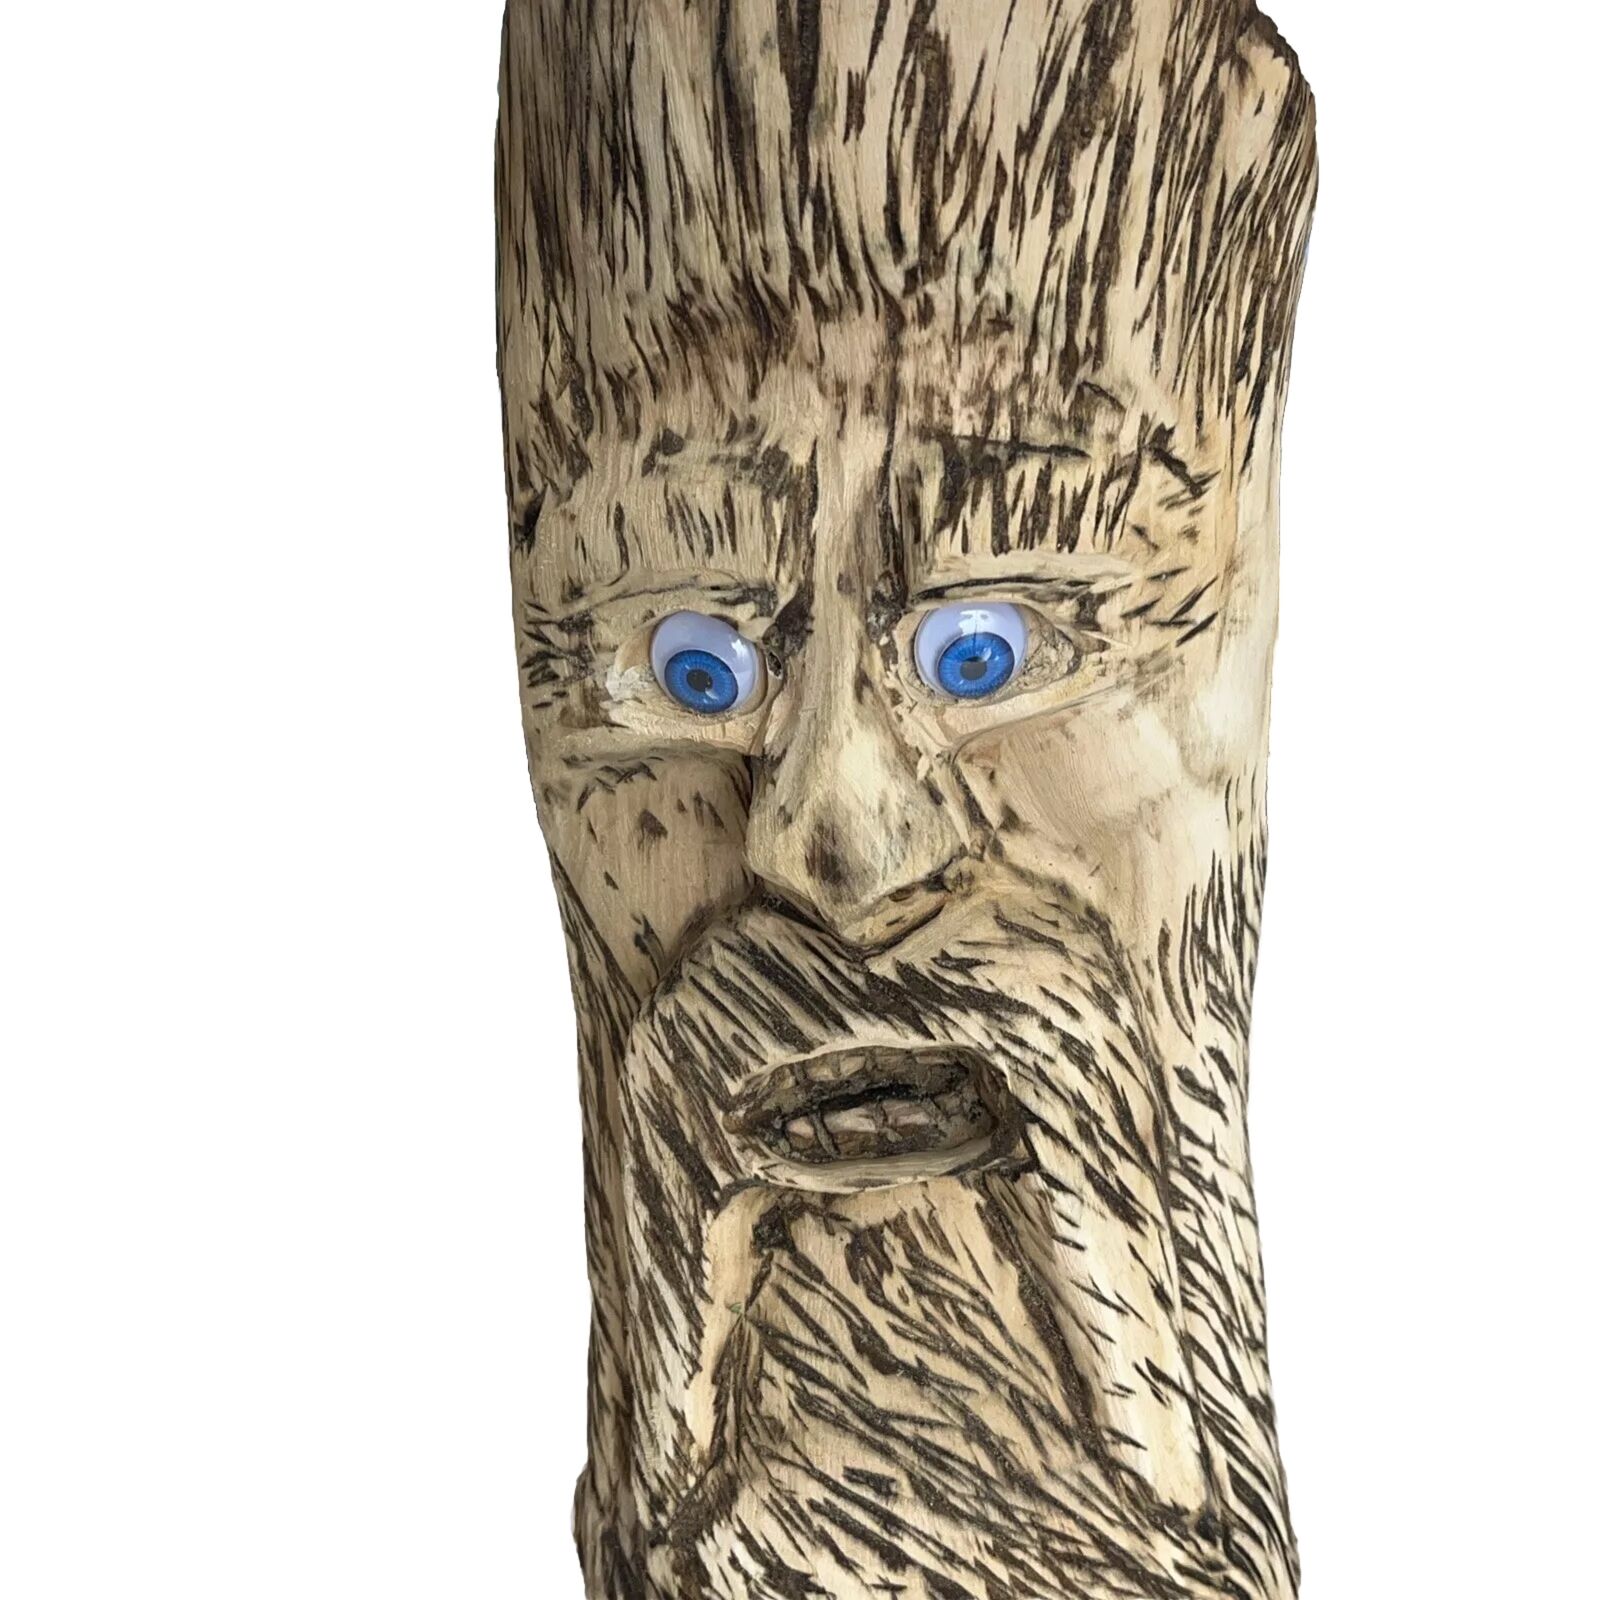 Hand carved wooden Wild Crazy Man Folk Art Statue